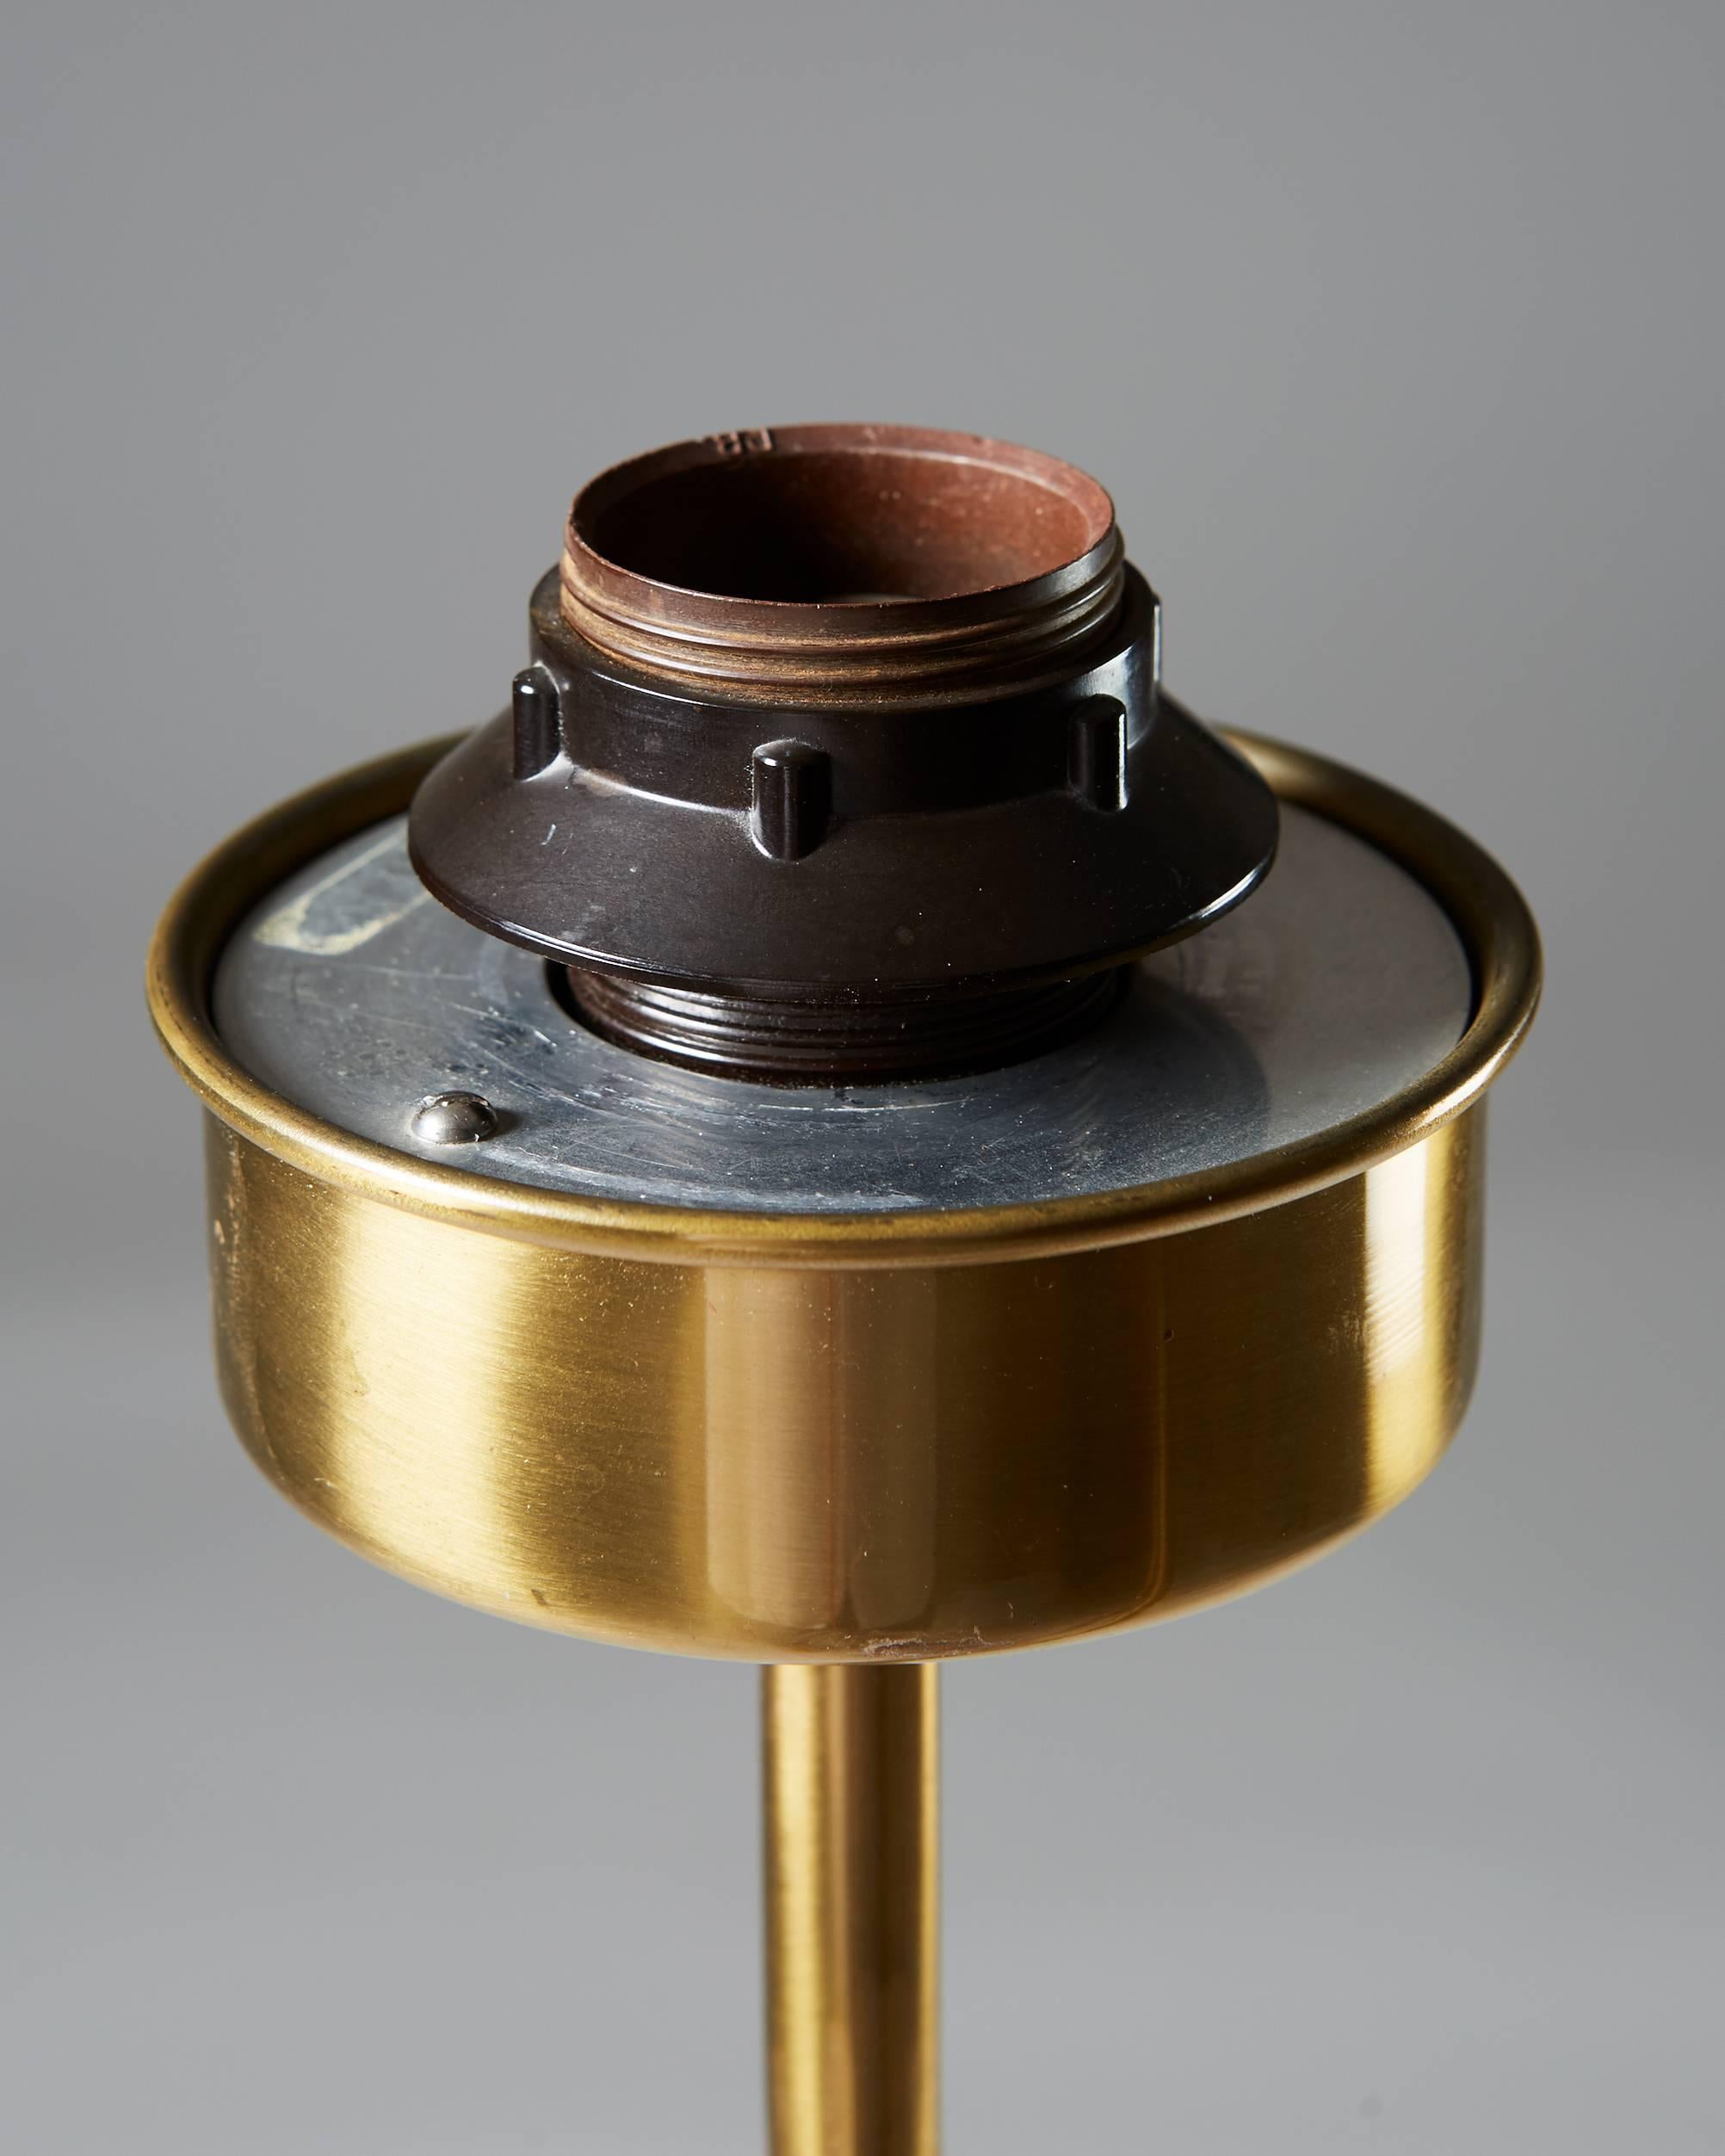 Mid-20th Century Floor Lamp Model 2568 Designed by Josef Frank for Svenskt Tenn, Sweden, 1939 